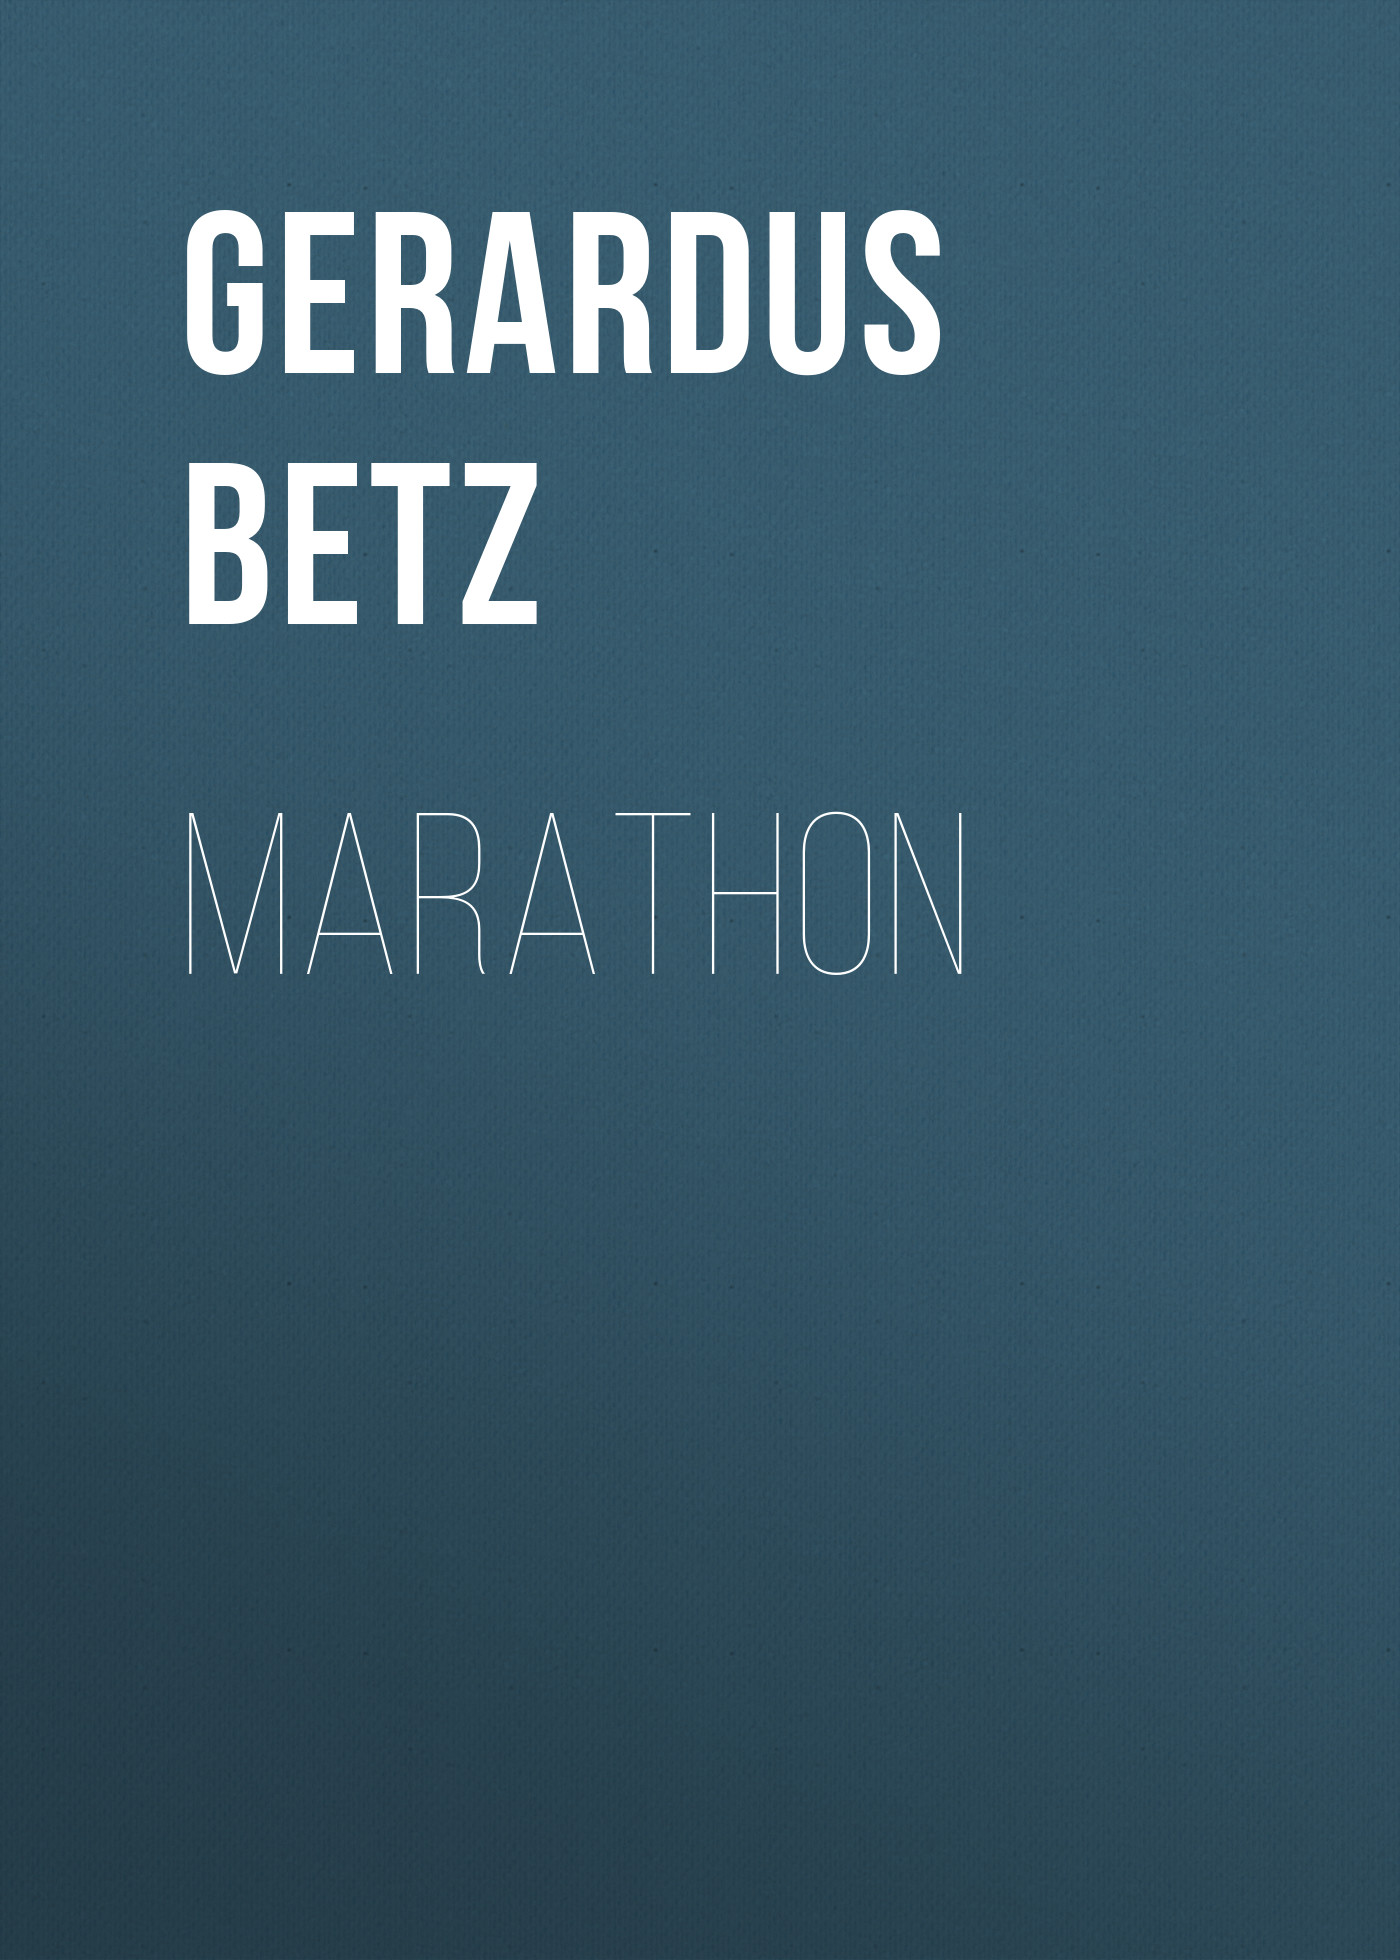 Книга Marathon из серии , созданная Gerardus Betz, может относится к жанру Зарубежная старинная литература, Зарубежная классика. Стоимость электронной книги Marathon с идентификатором 24174516 составляет 0.90 руб.